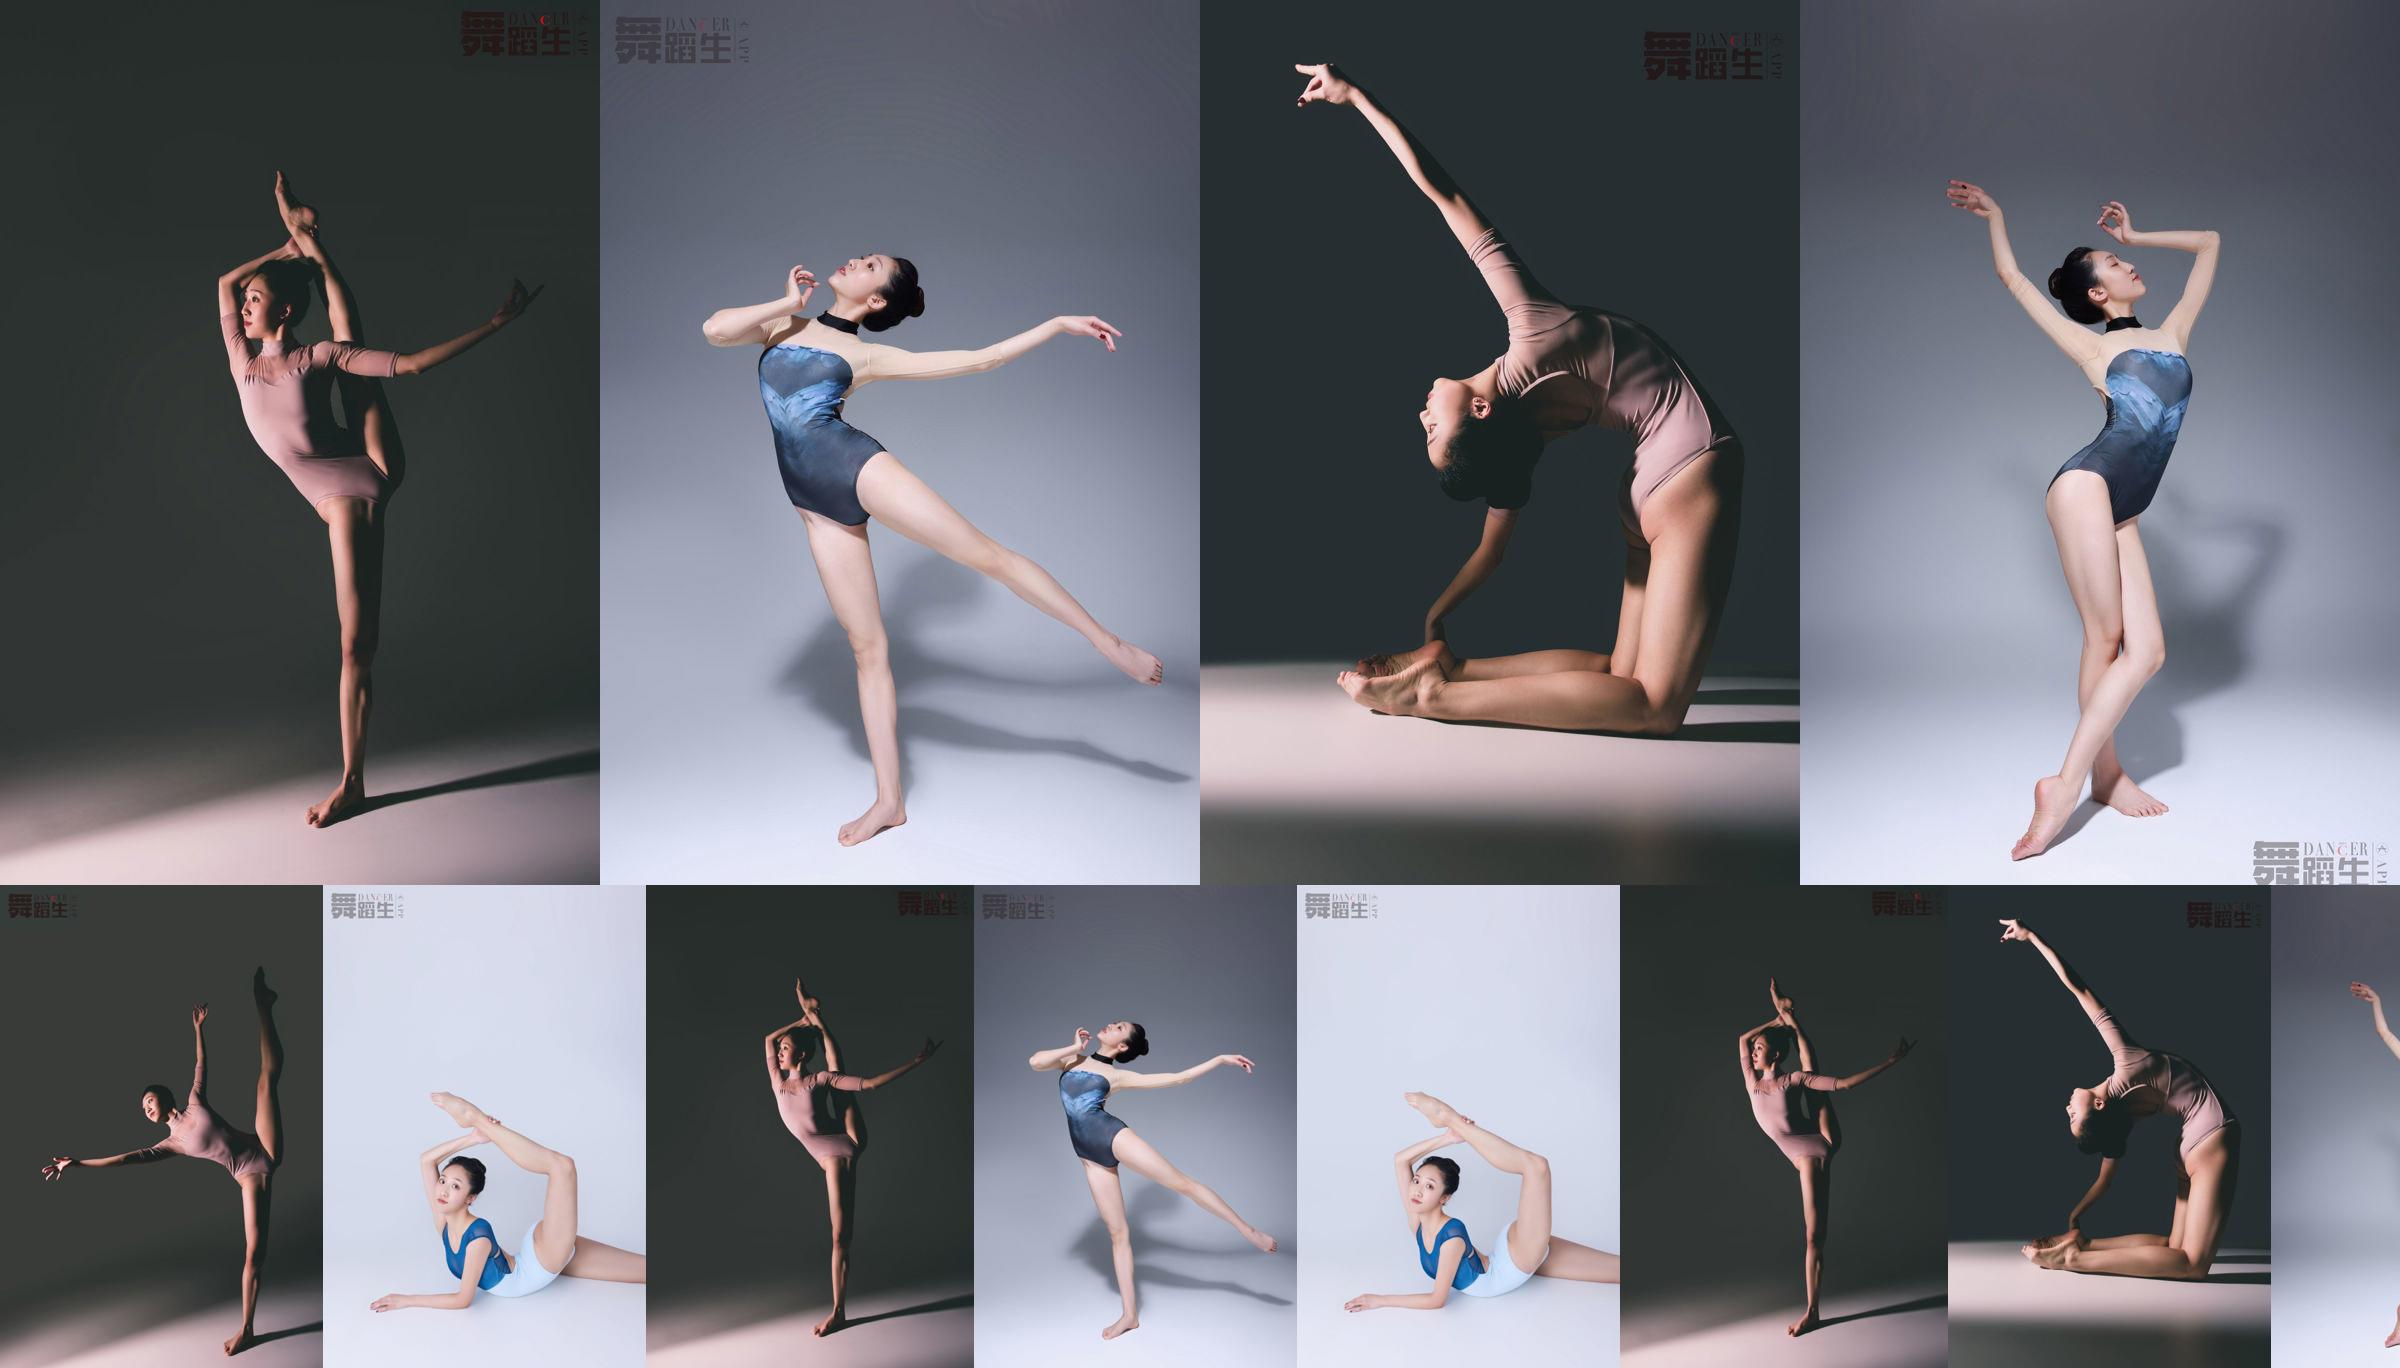 [Carrie Galli] Journal d'un étudiant en danse 079 Zhao Huini No.85d73a Page 1